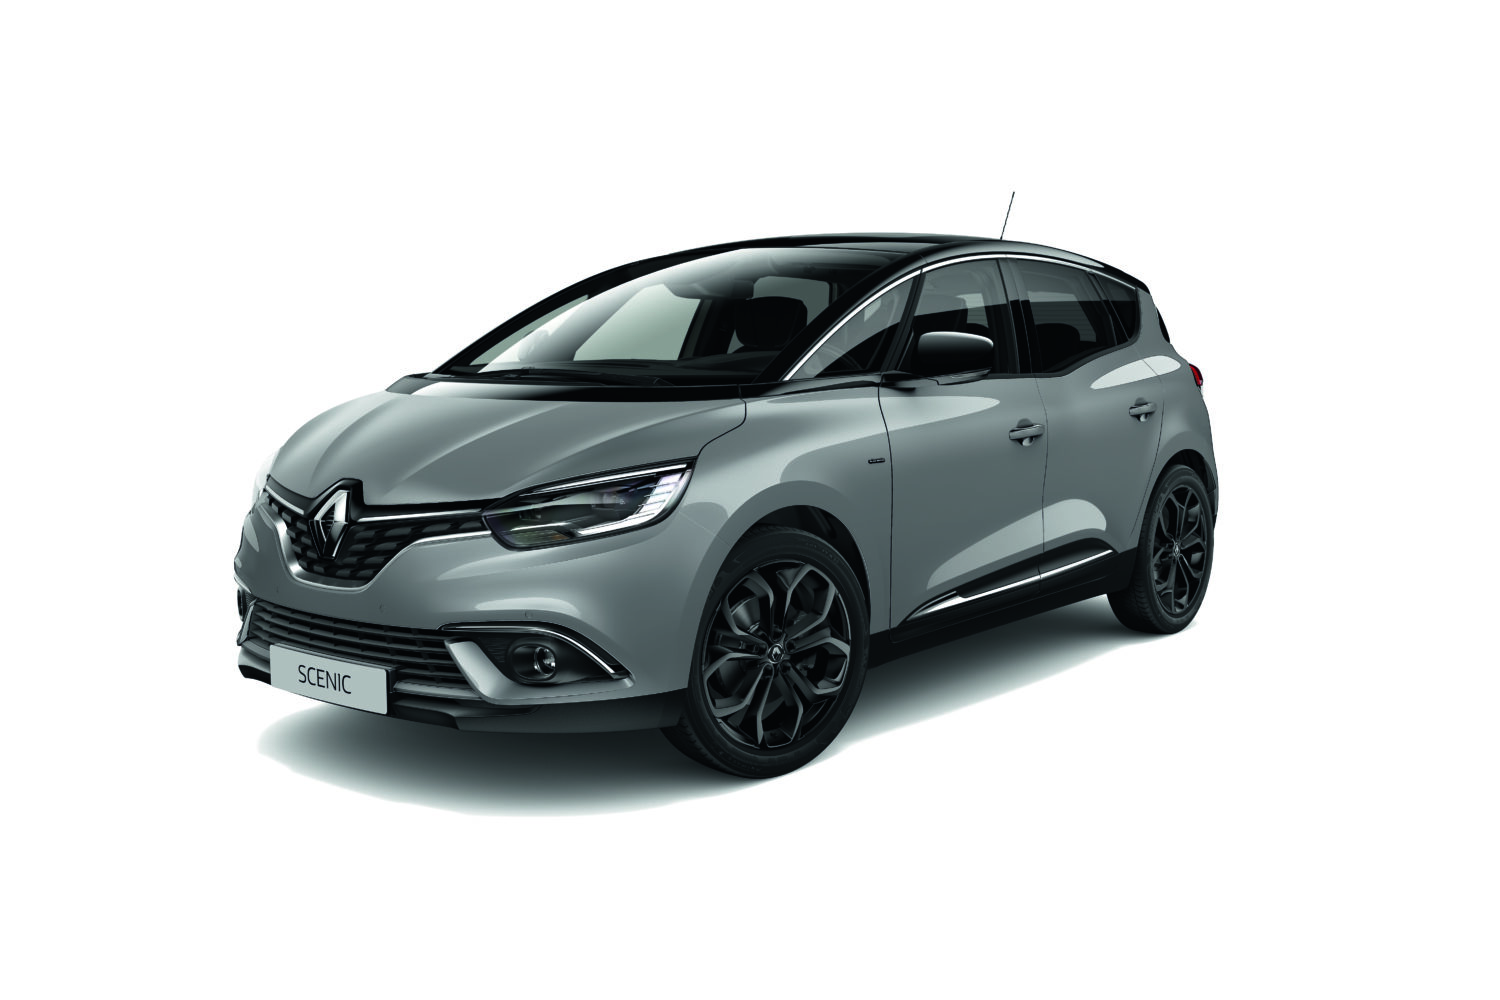 2019 - Renault SCENIC Série Limitée Black Edition